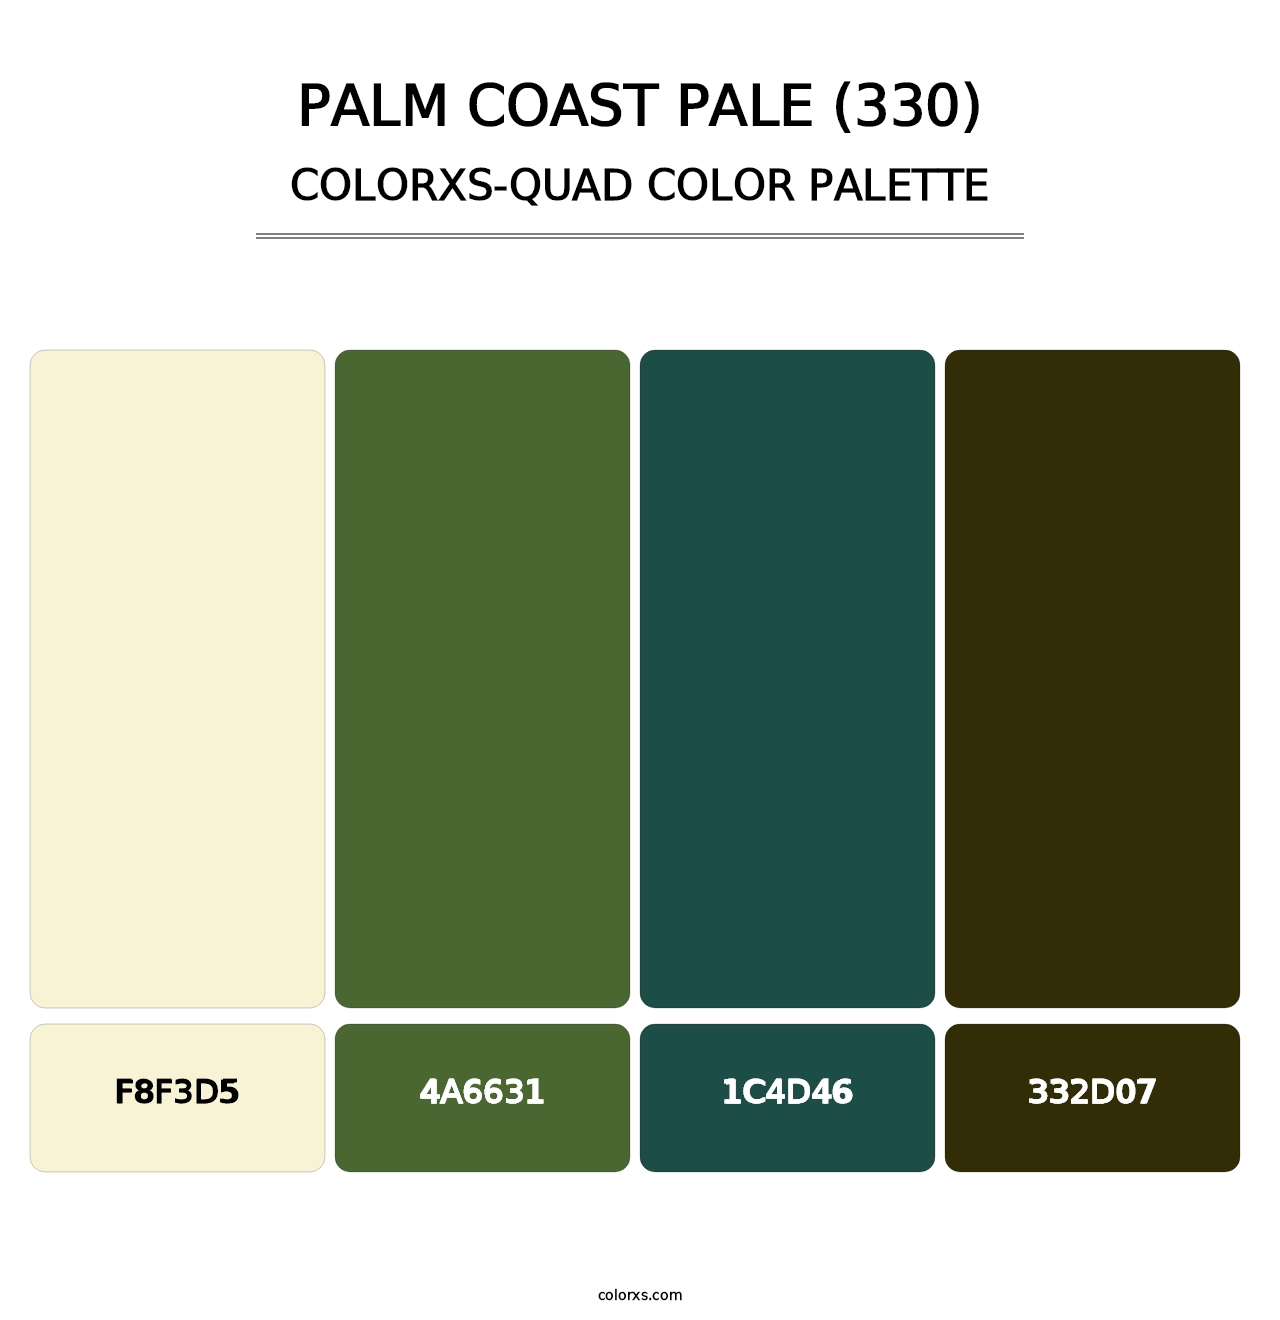 Palm Coast Pale (330) - Colorxs Quad Palette